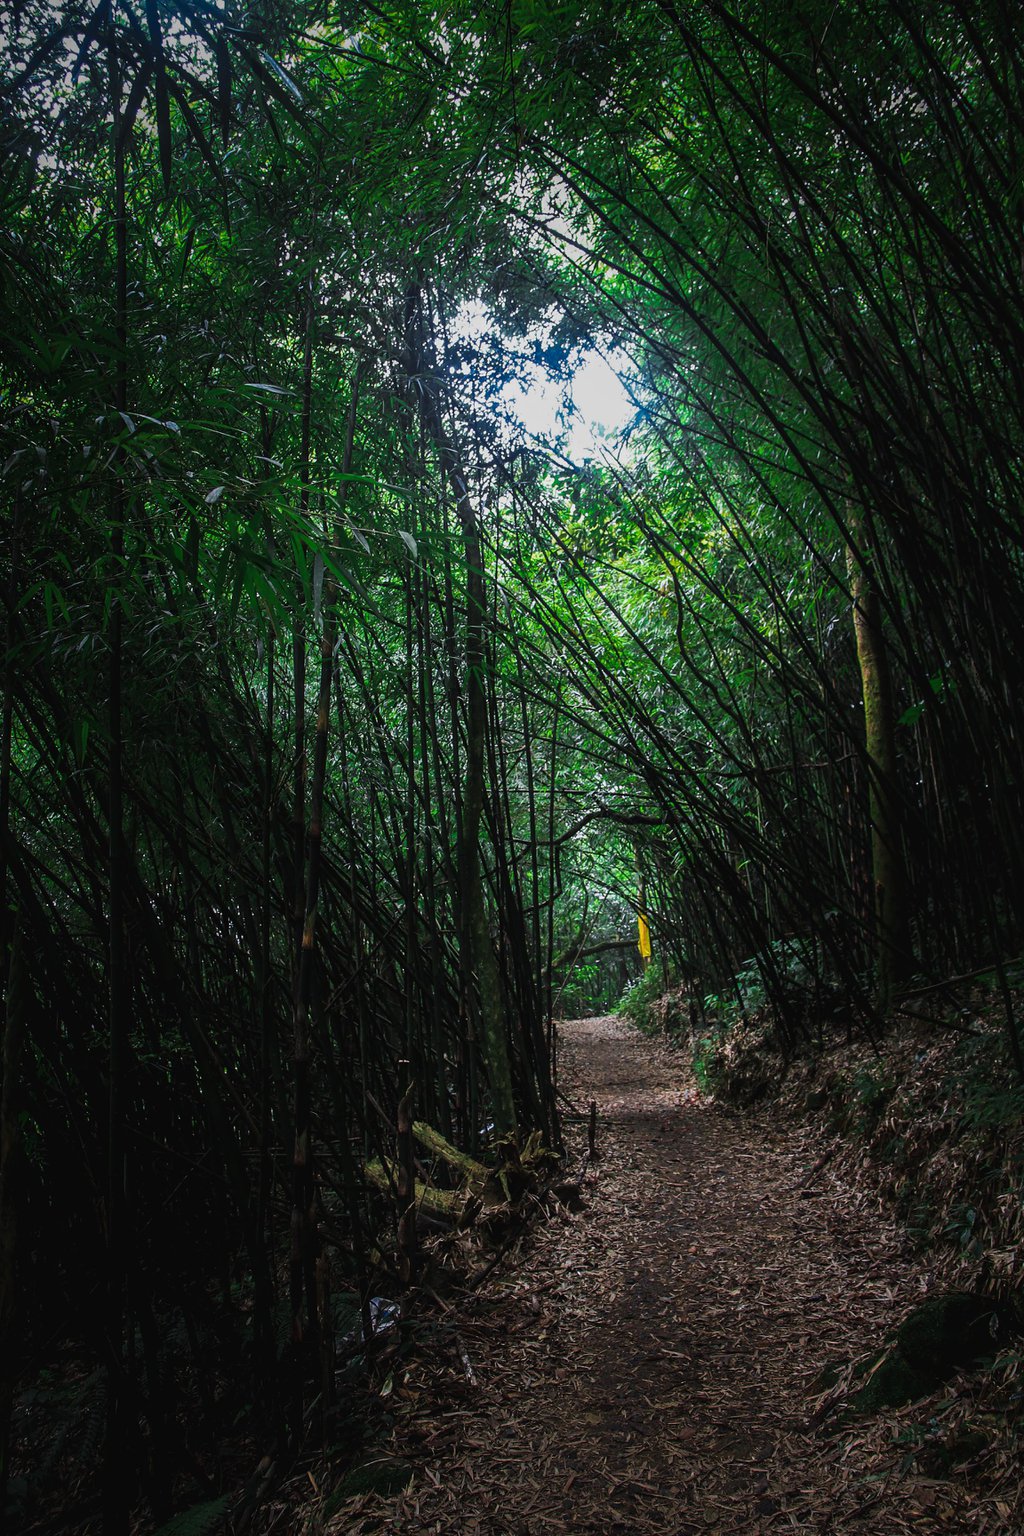 Khu rừng này ở Tam Đảo của Vĩnh Phúc đẹp như phim, cây cổ thụ la liệt, người ta đang lên xem